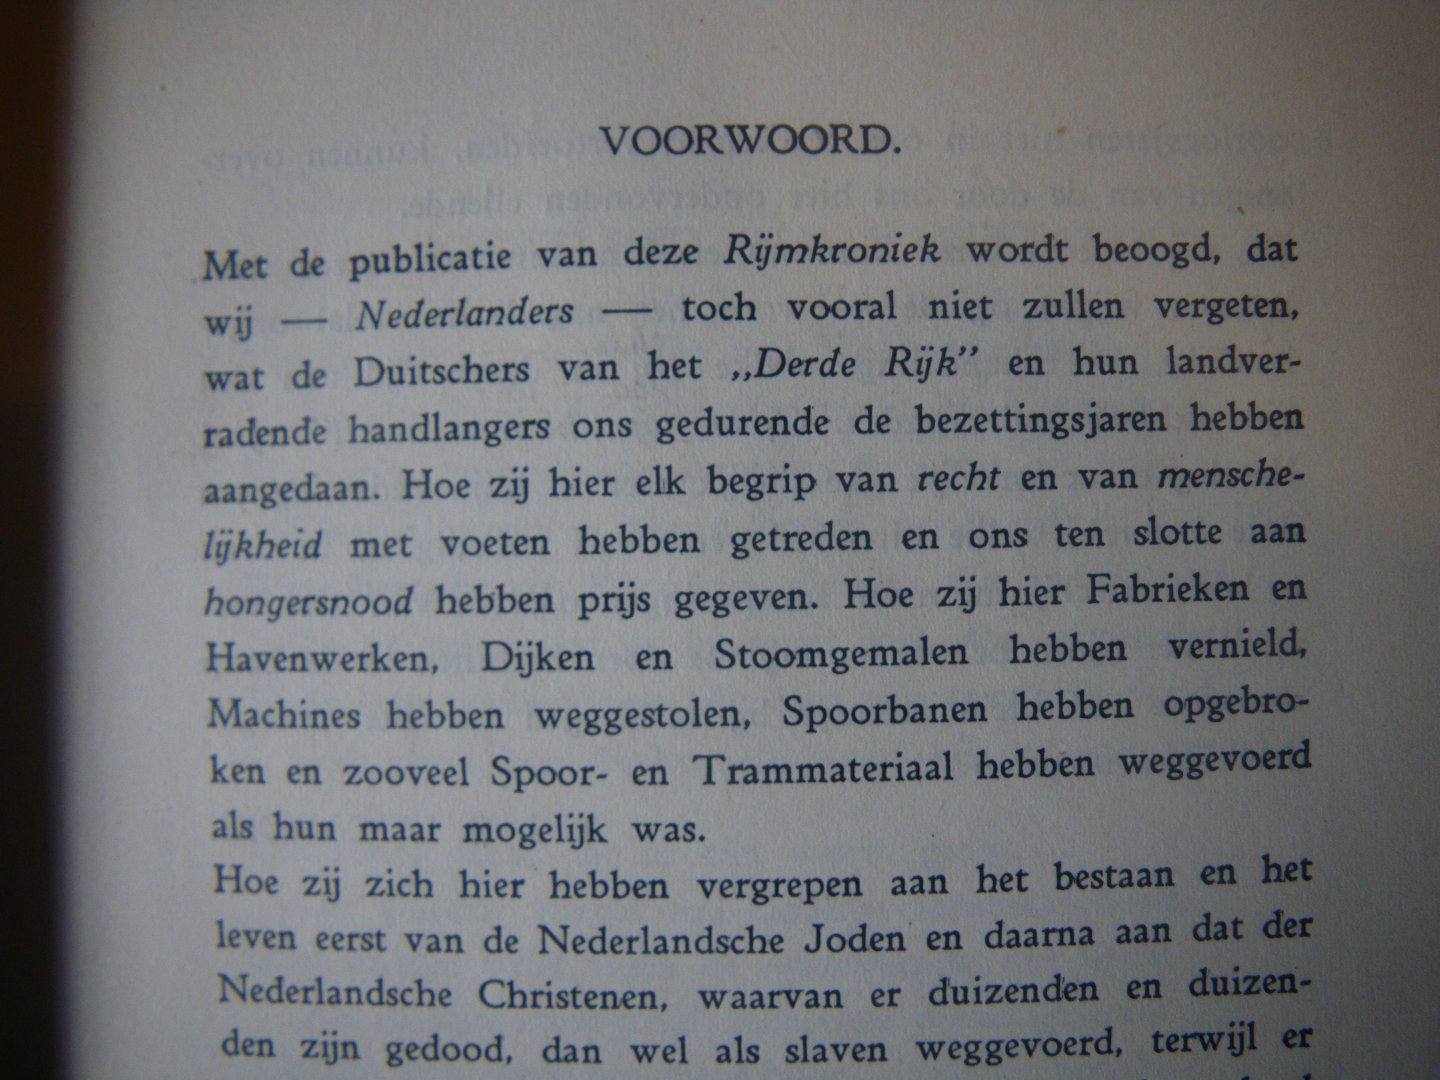 LUCARDIE, A.J.E. - Rijmkroniek - WERELDOORLOG 1940-1945 ( gedichten m.b.t. WO-II en Den Haag )